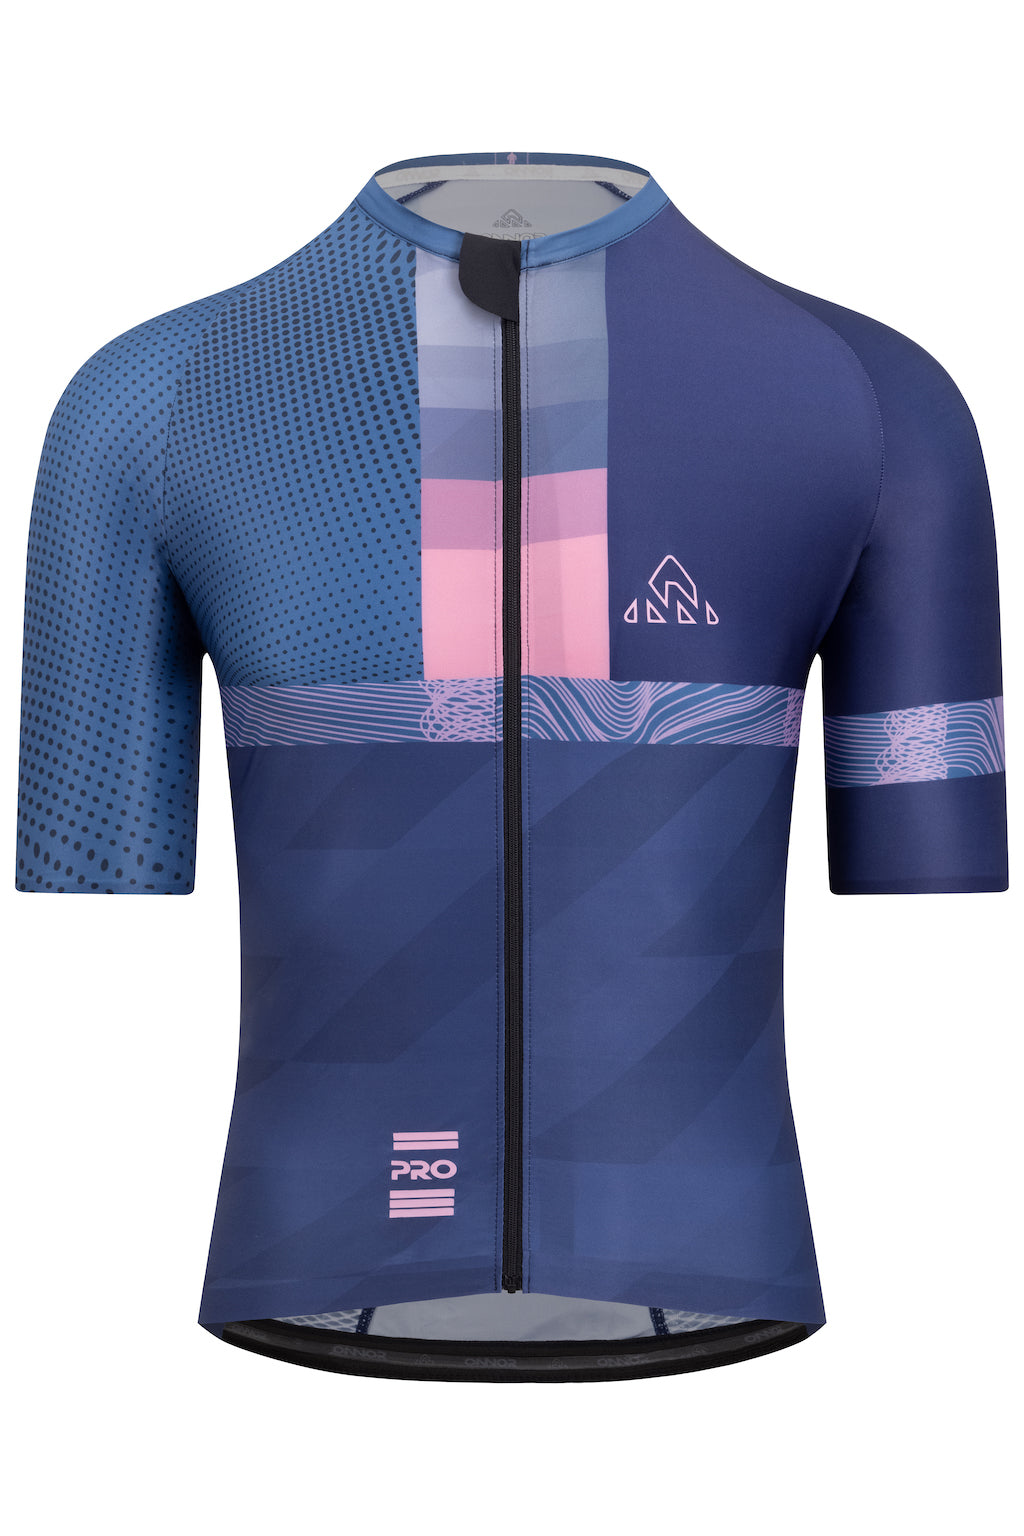 Norrøna Fjørå Equaliser Lightweight Long Sleeve - Cycling jersey Men's, Free EU Delivery